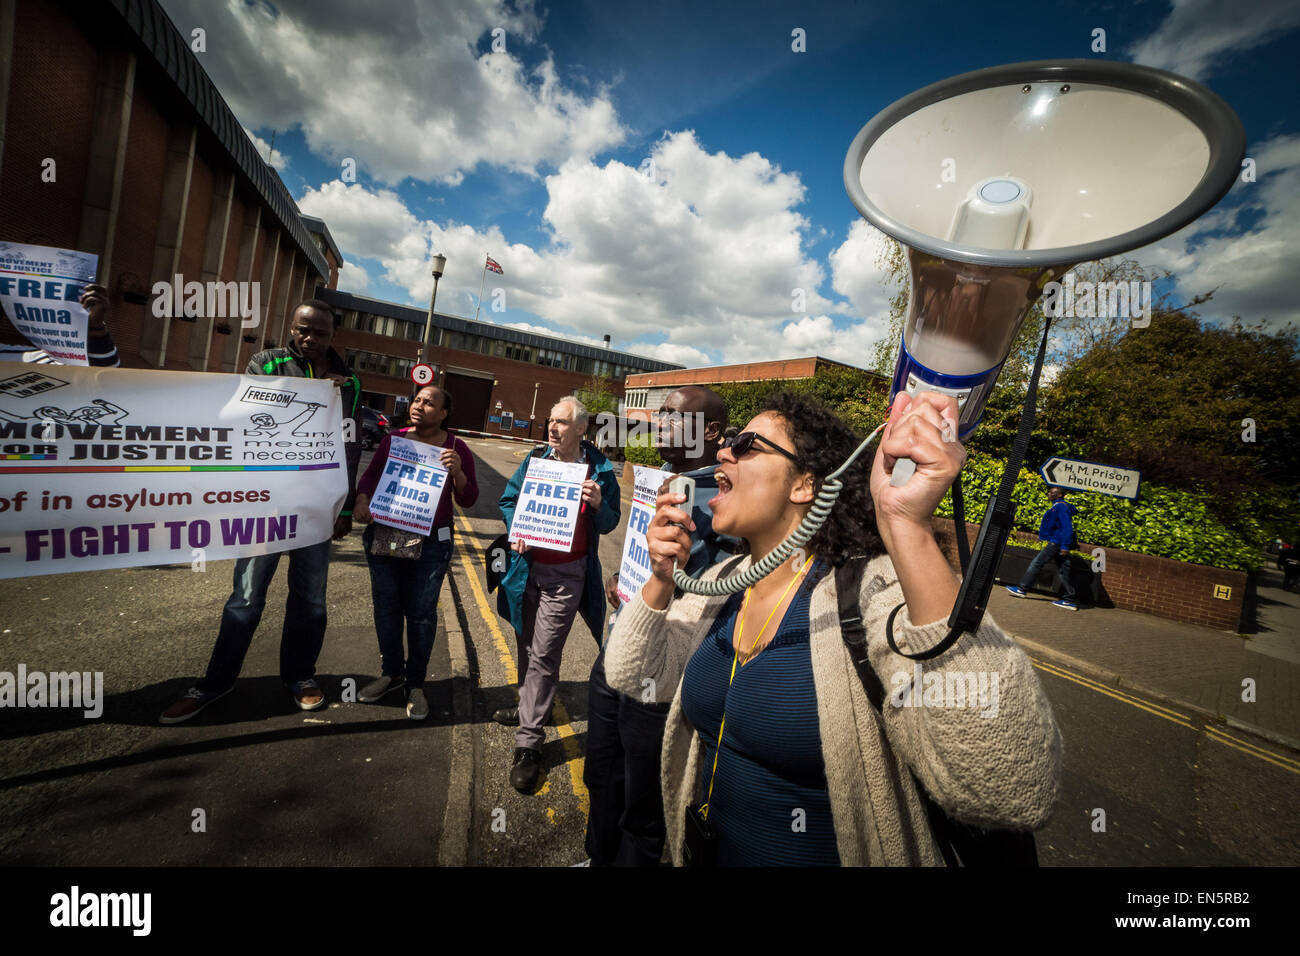 Londres, Royaume-Uni. 28 avril, 2015. Mouvement pour la justice manifestation devant la prison de Holloway Crédit : Guy Josse/Alamy Live News Banque D'Images